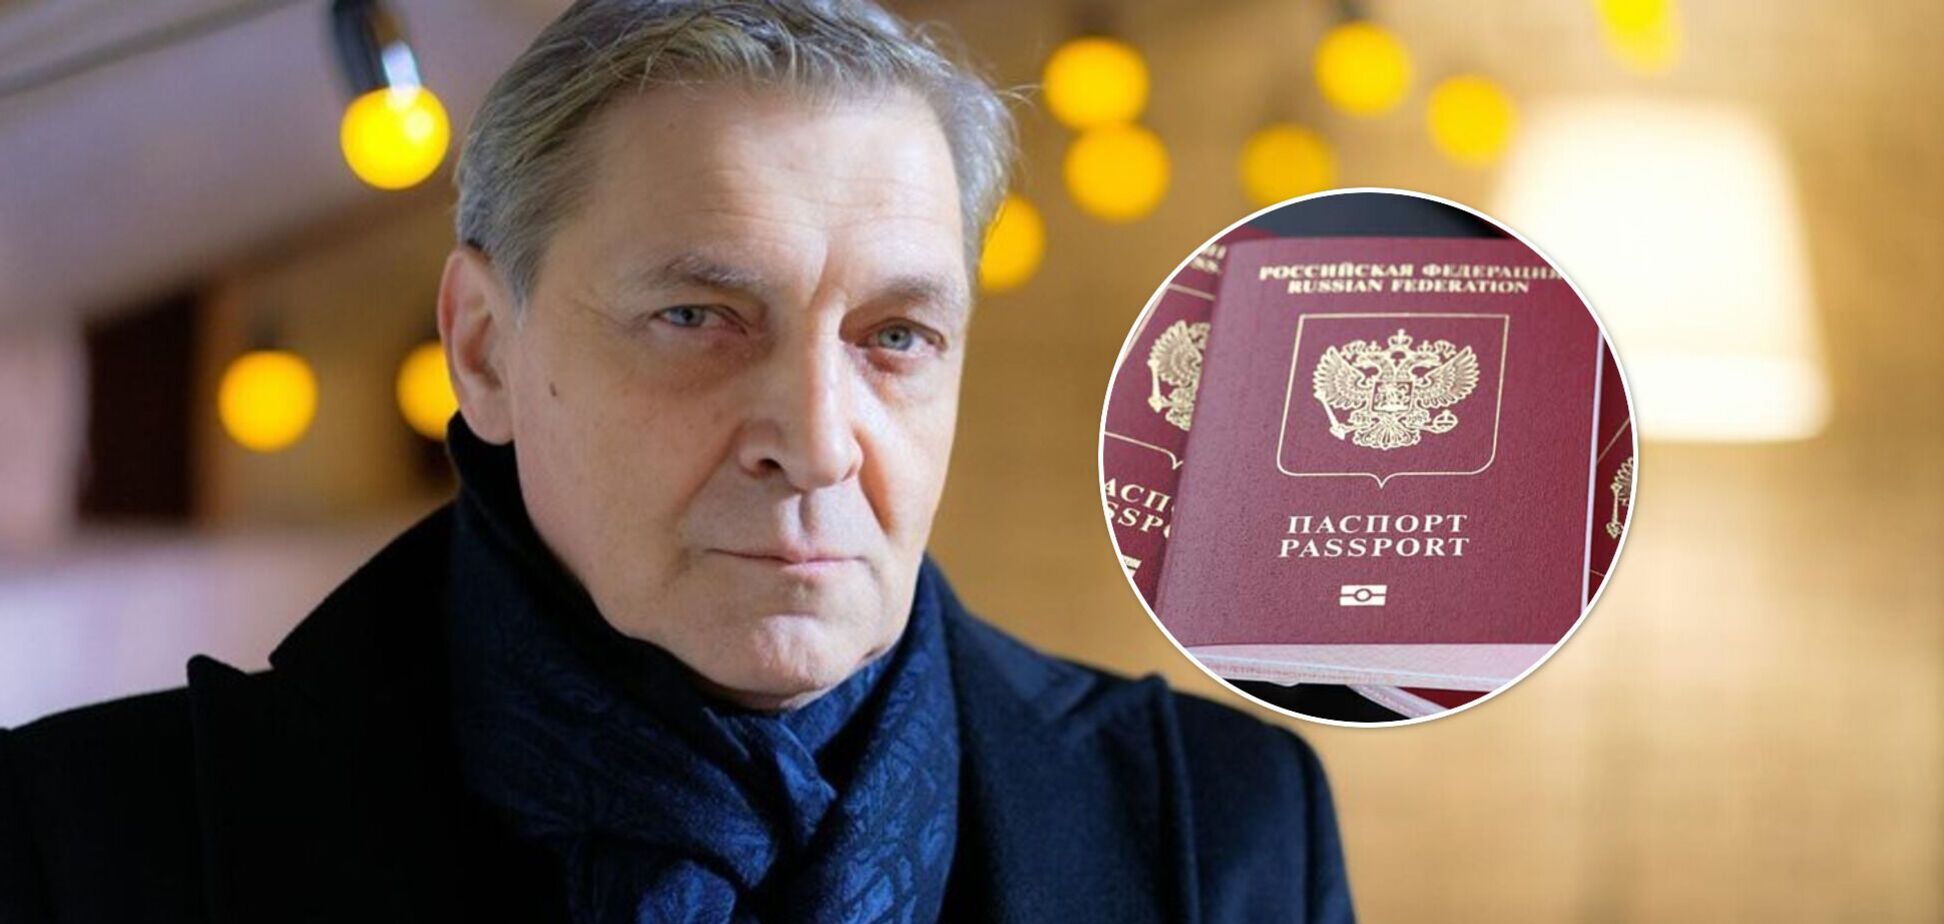 Невзоров показав здоровенні черги росіян за закордонними паспортами. Фото